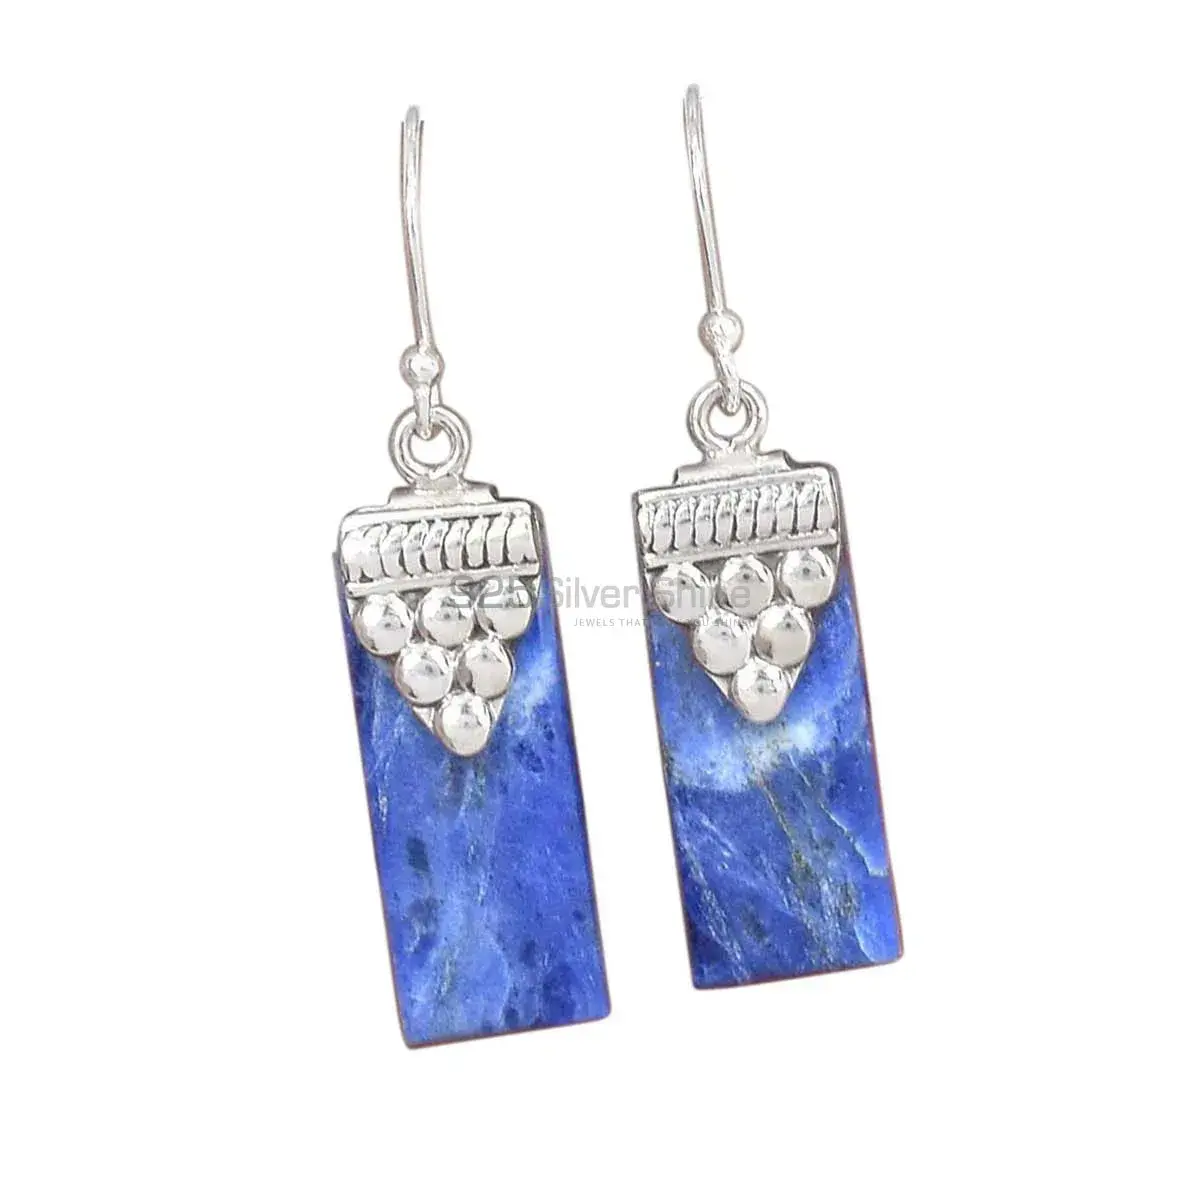 Best Design 925 Sterling Silver Earrings In Lapis Gemstone Jewelry 925SE2463